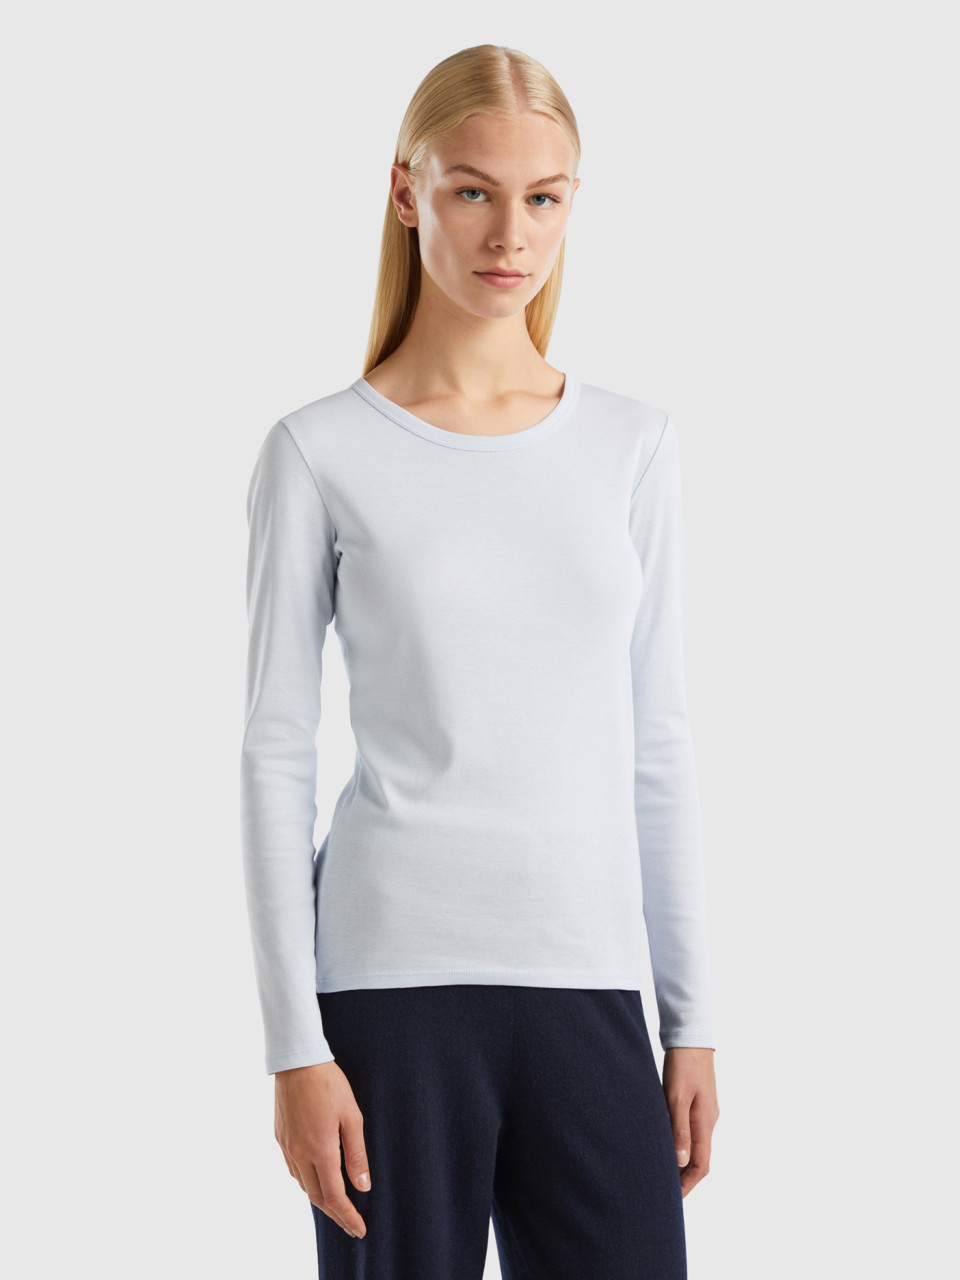 Benetton, Long Sleeve Pure Cotton T-shirt, Sky Blue, Women